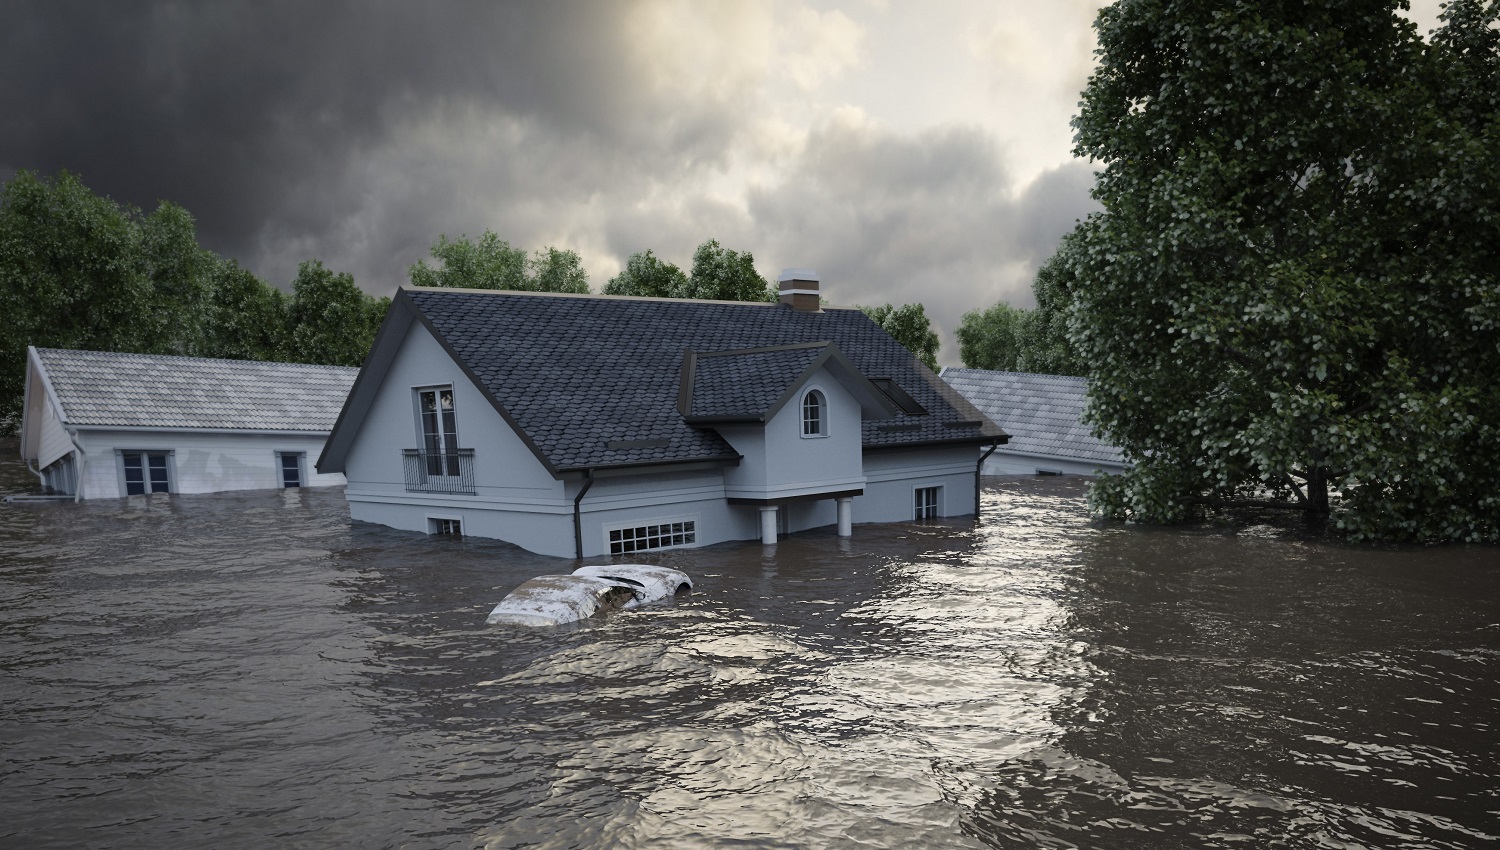 Какую систему оповещения следует использовать в зонах риска наводнений?